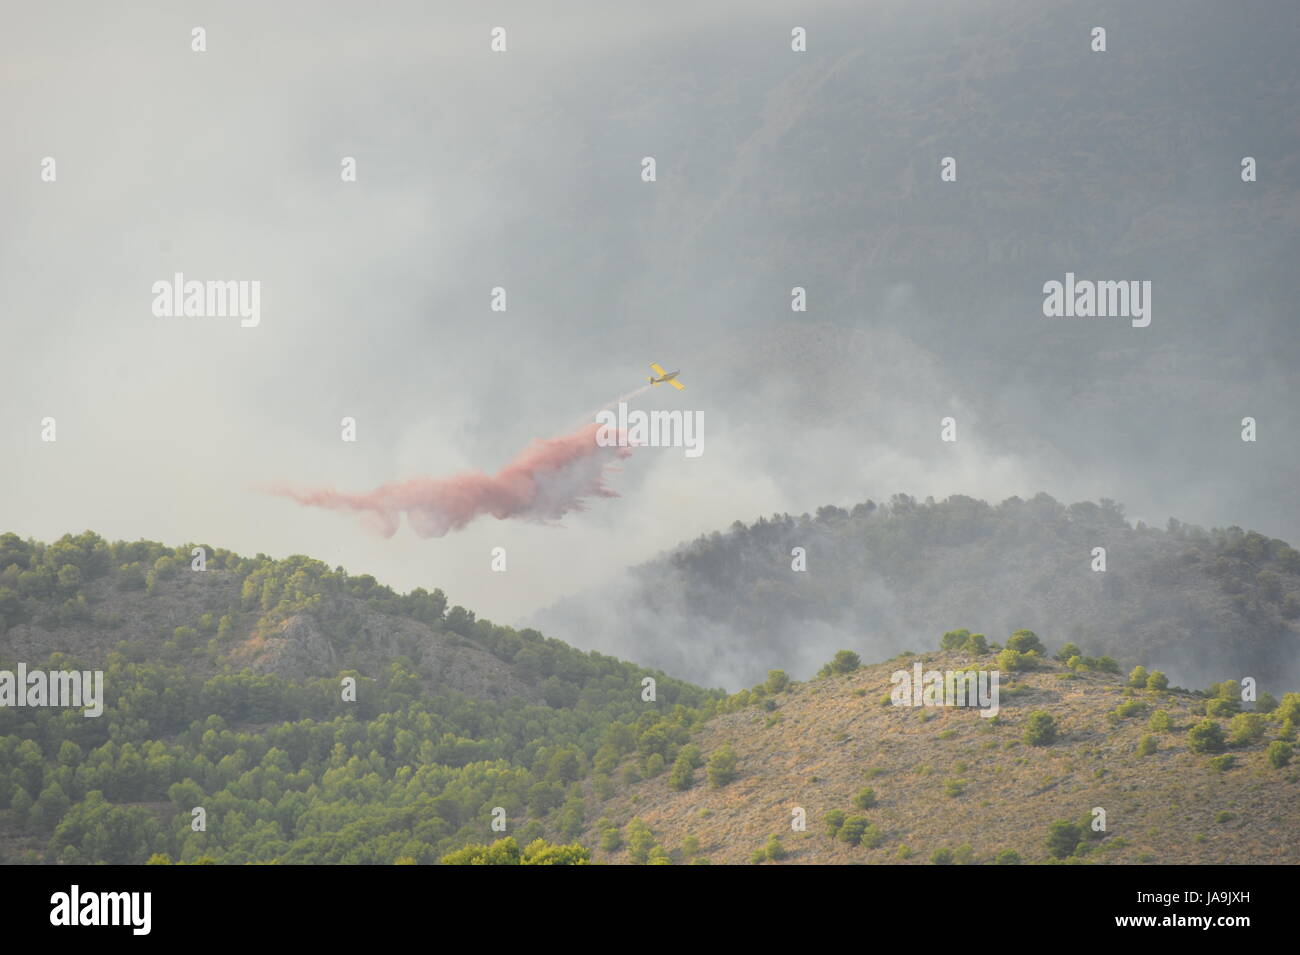 Spanien - Wald Feuer - Feuer Flugzeug - Feuer Hubschrauber Stockfoto